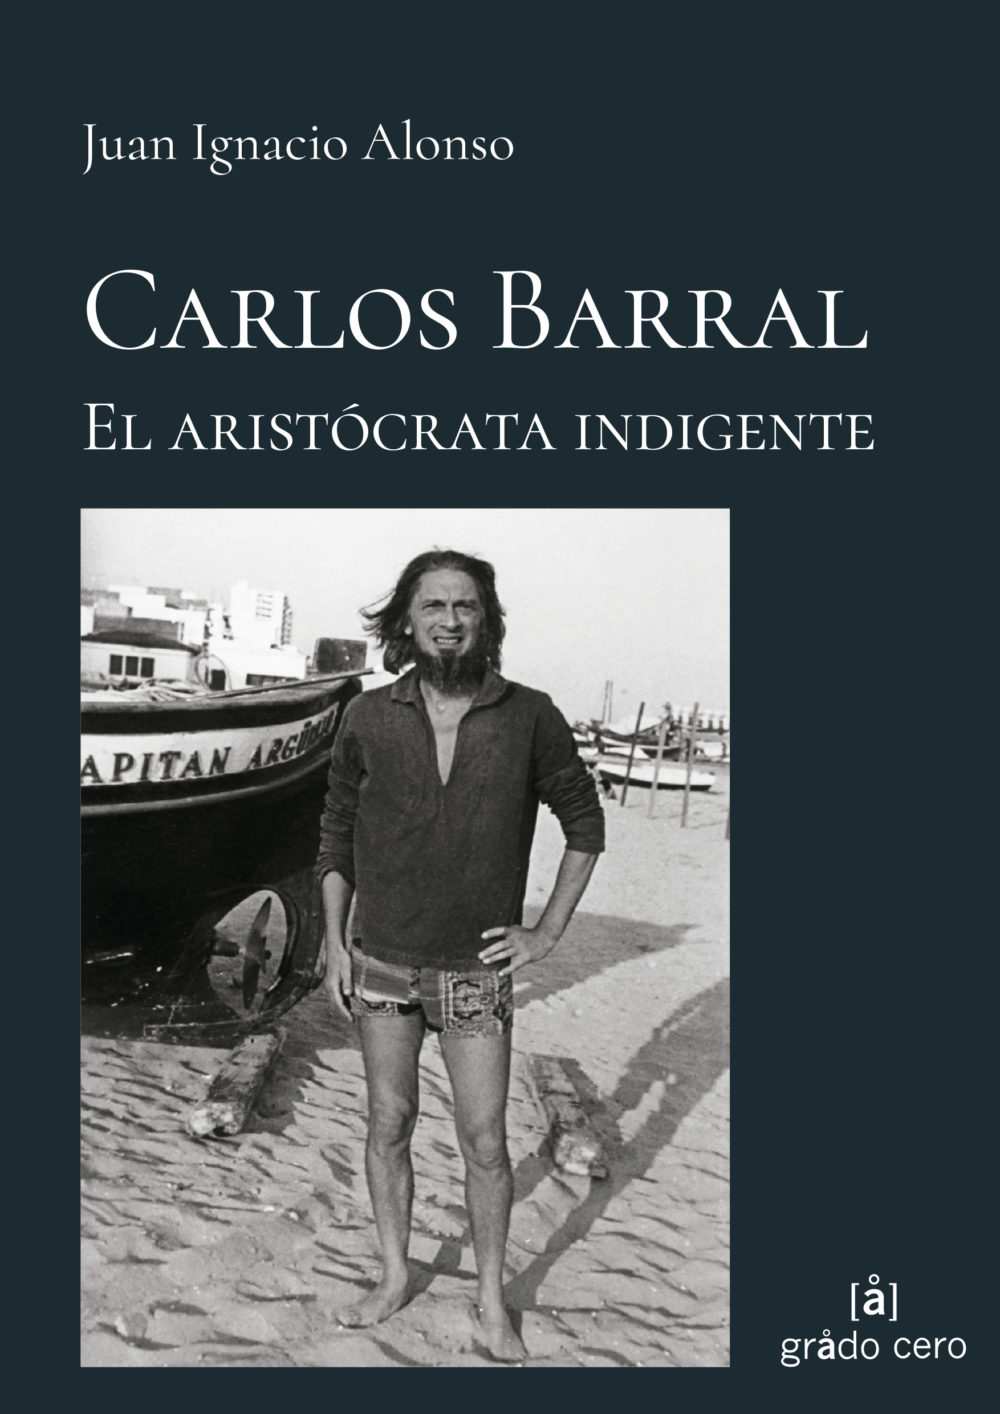 Carlos Barral, editor fundamental